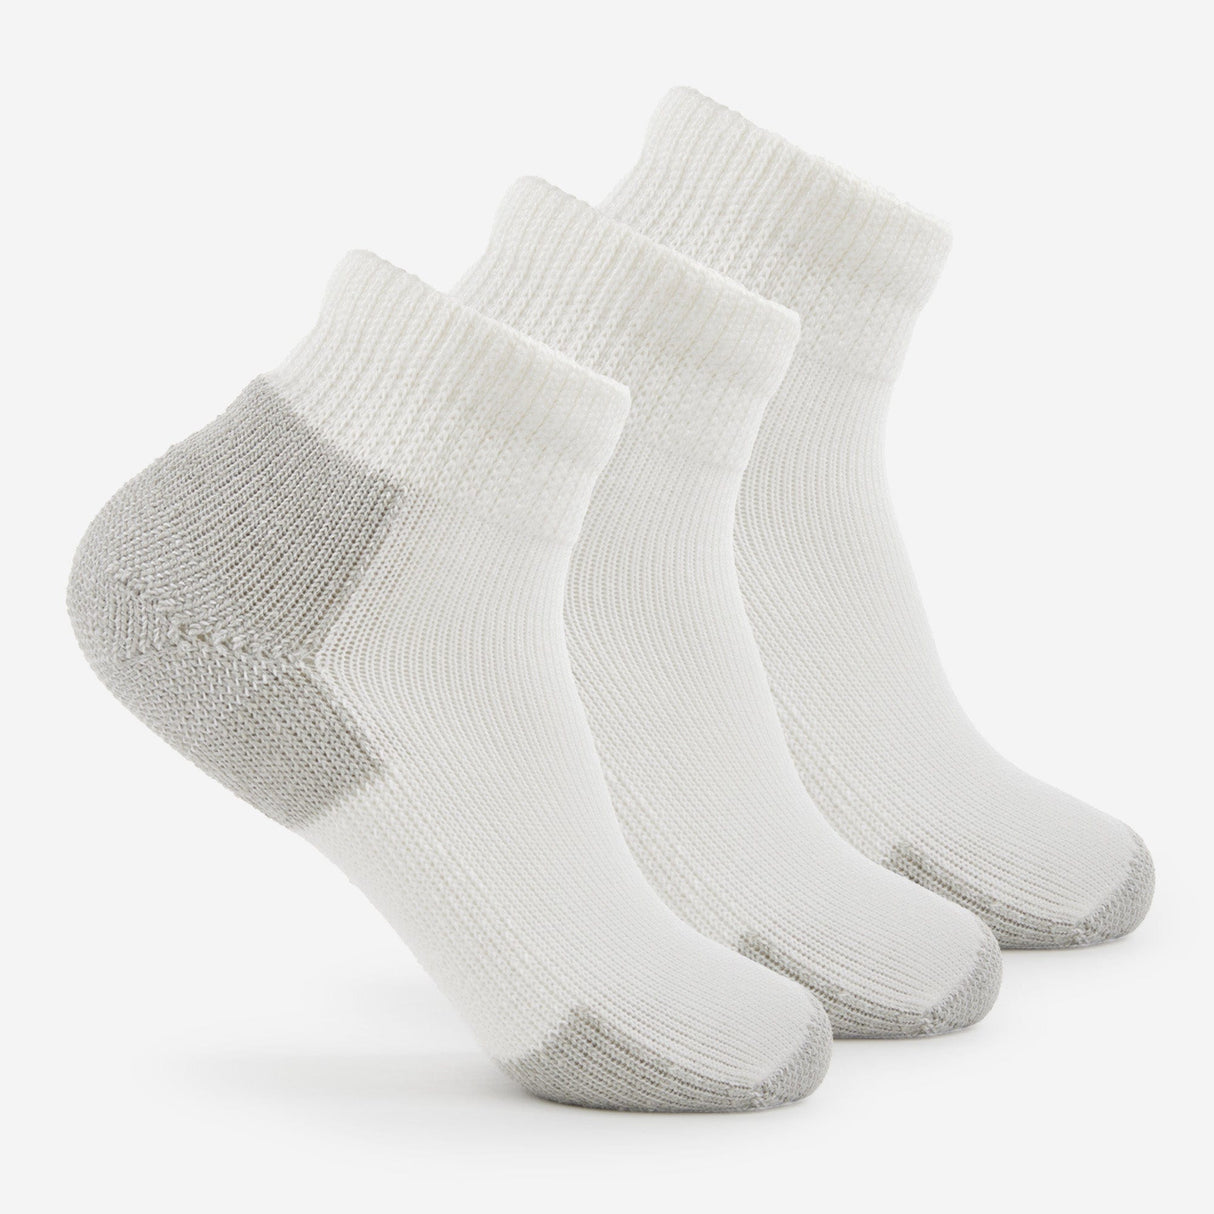 Thorlo Running Foot Protection Heavy Cushion Mini Crew Socks  -  Medium / White/Platinum / 3-Pair Pack